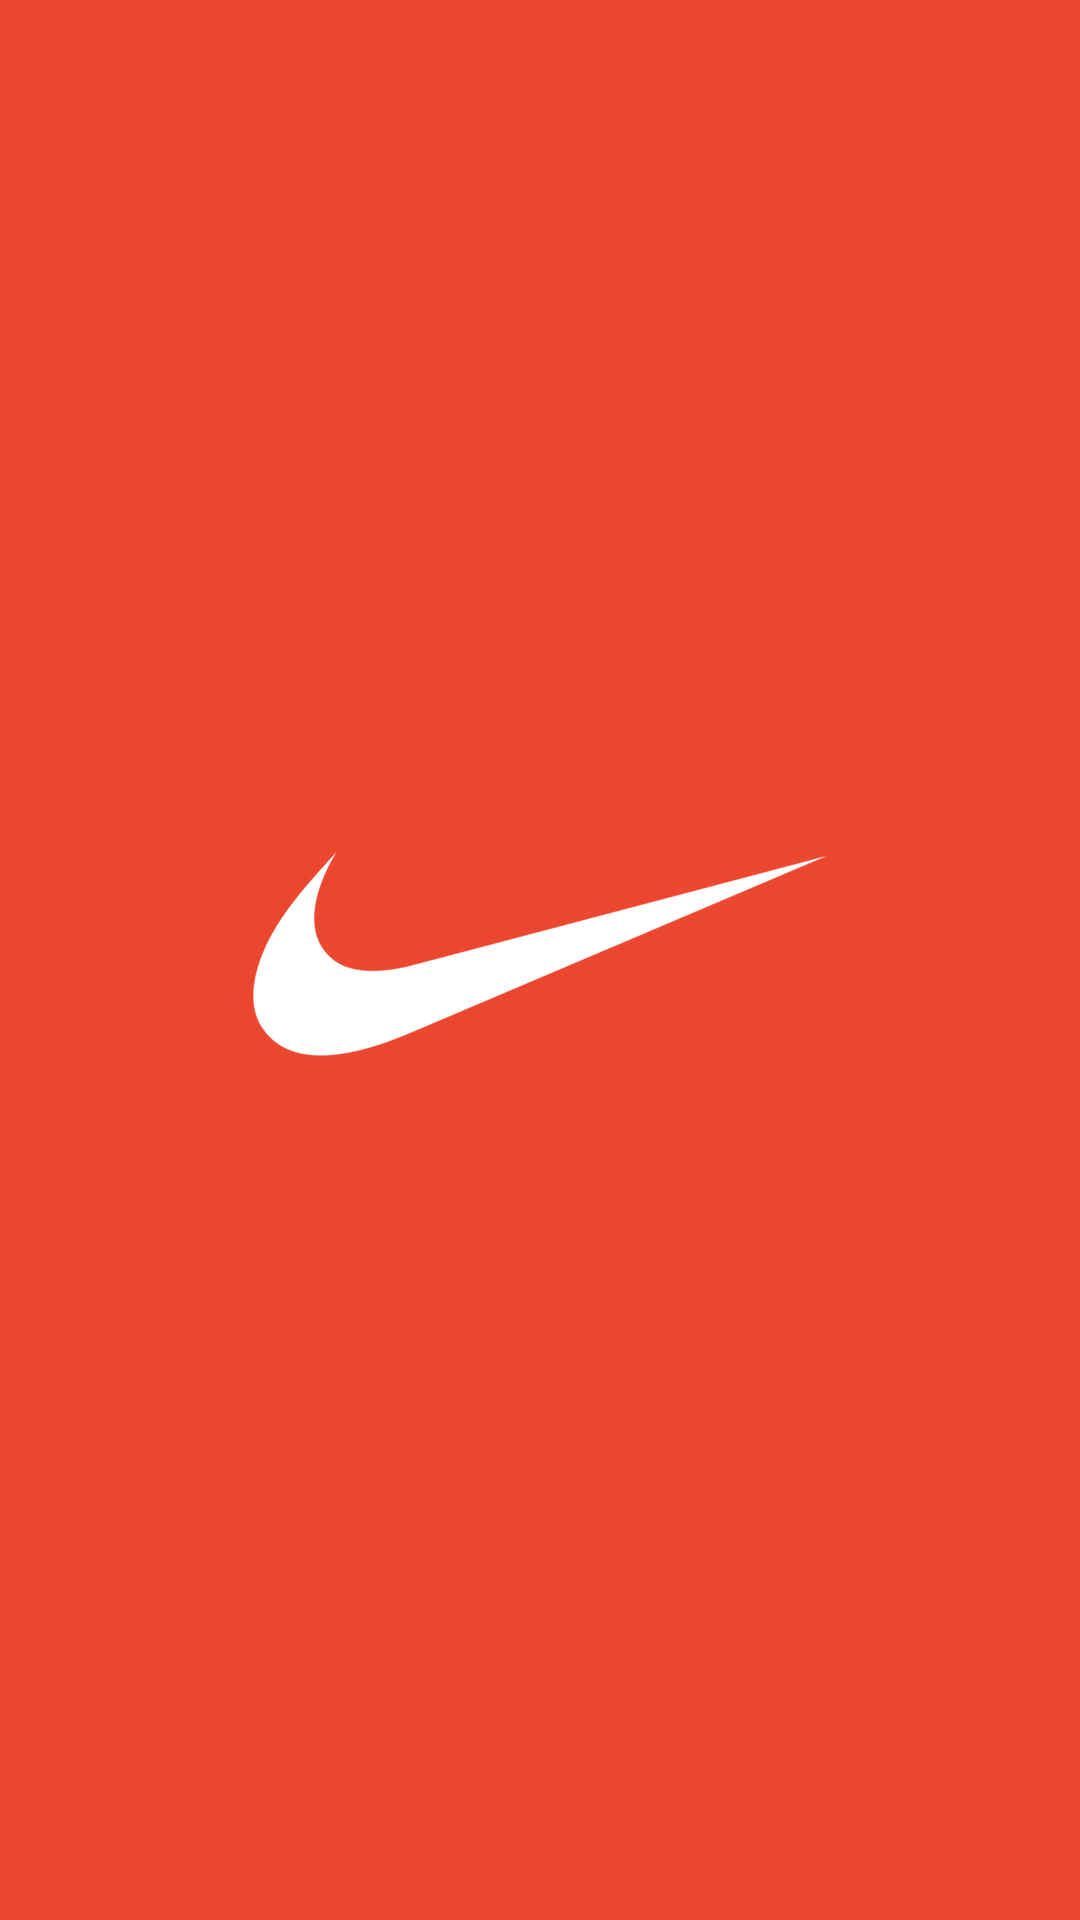 Nike Logo Wallpapers 4k Hd Nike Logo Backgrounds On Wallpaperbat